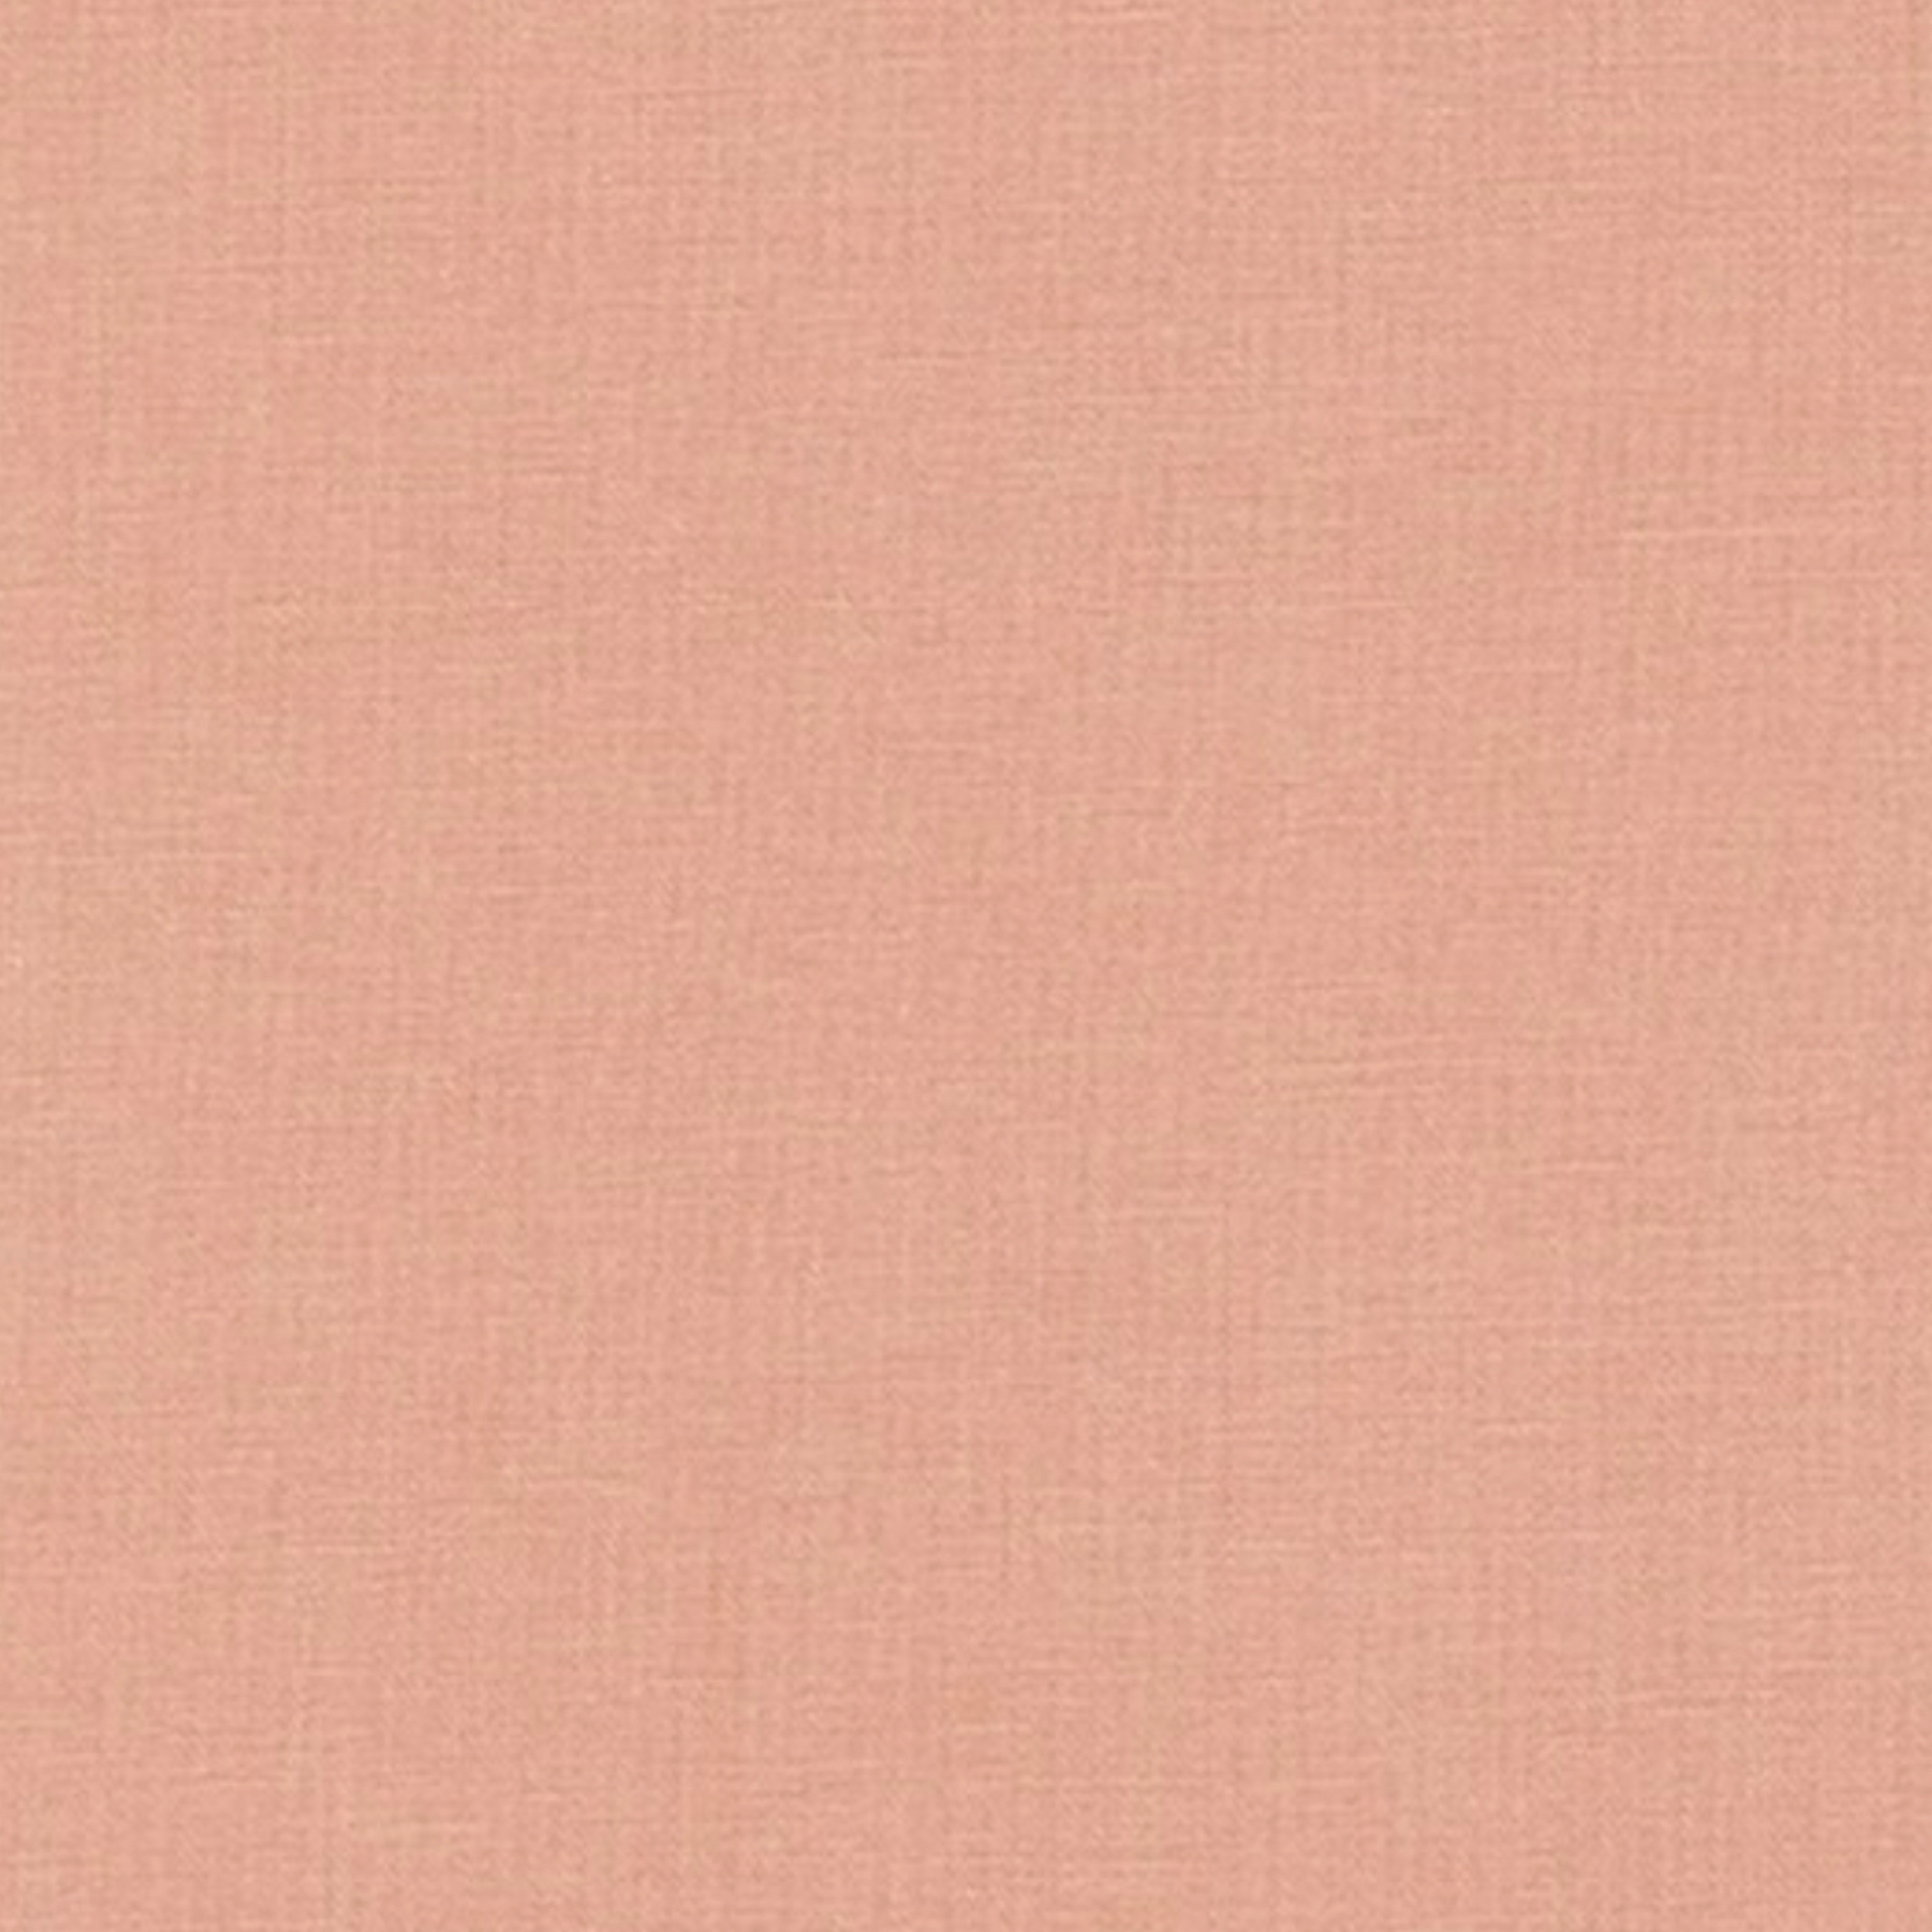 Essex Linen in Rose by Robert Kaufman - Cotton Fabric - Rosie's Craft Shop Ltd